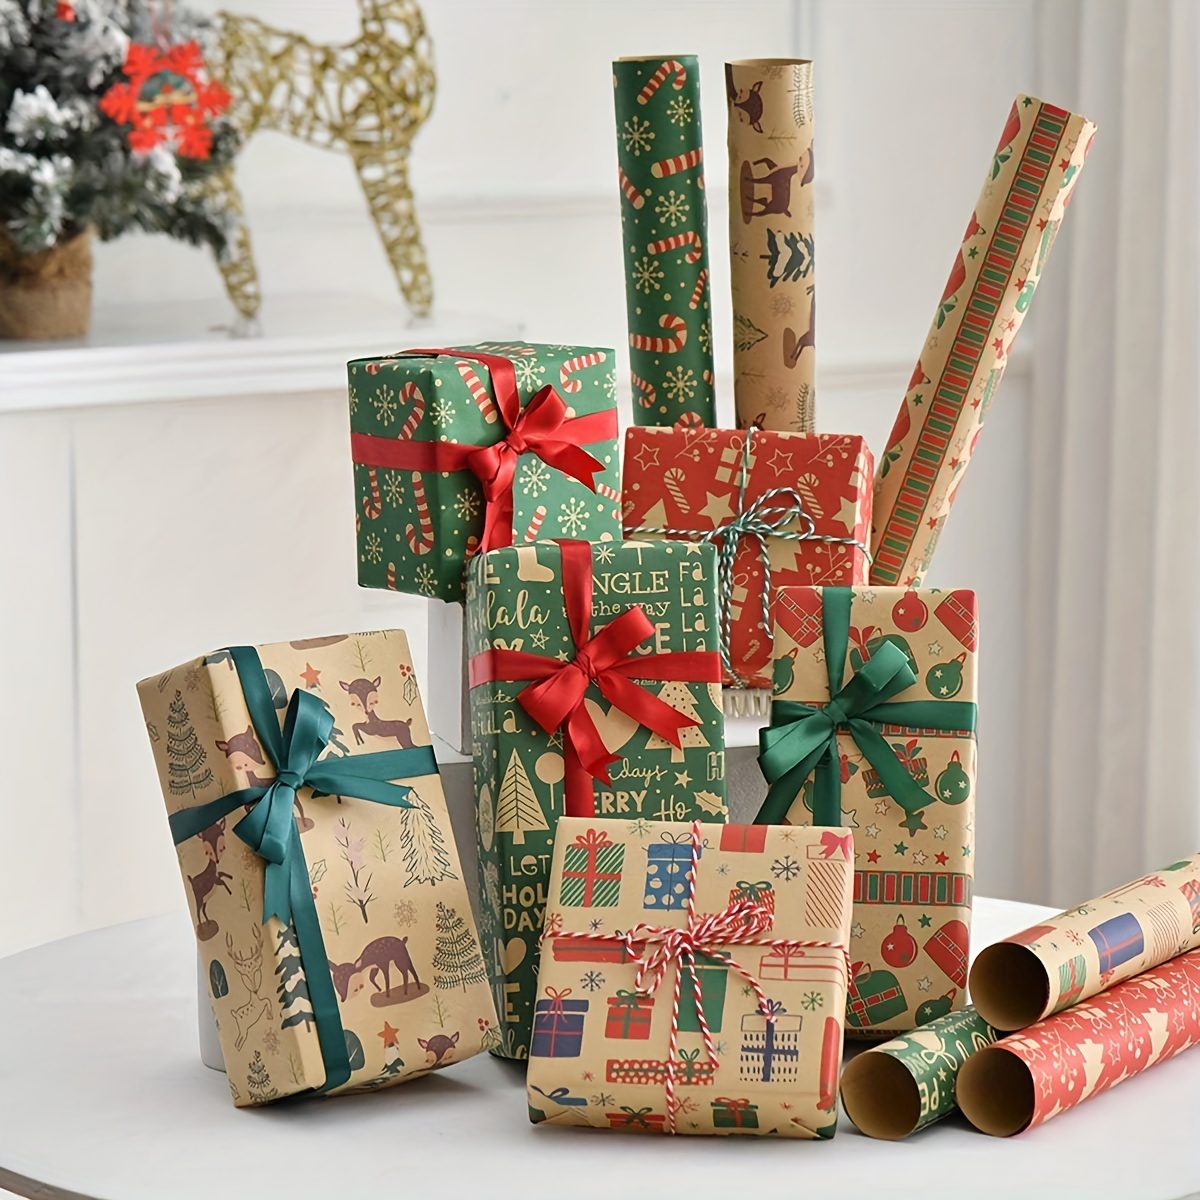 100 hojas de papel de seda de la serie verde para envolver regalos, papel  de seda verde sólido de Navidad para bolsas de regalo para bodas,  festivales